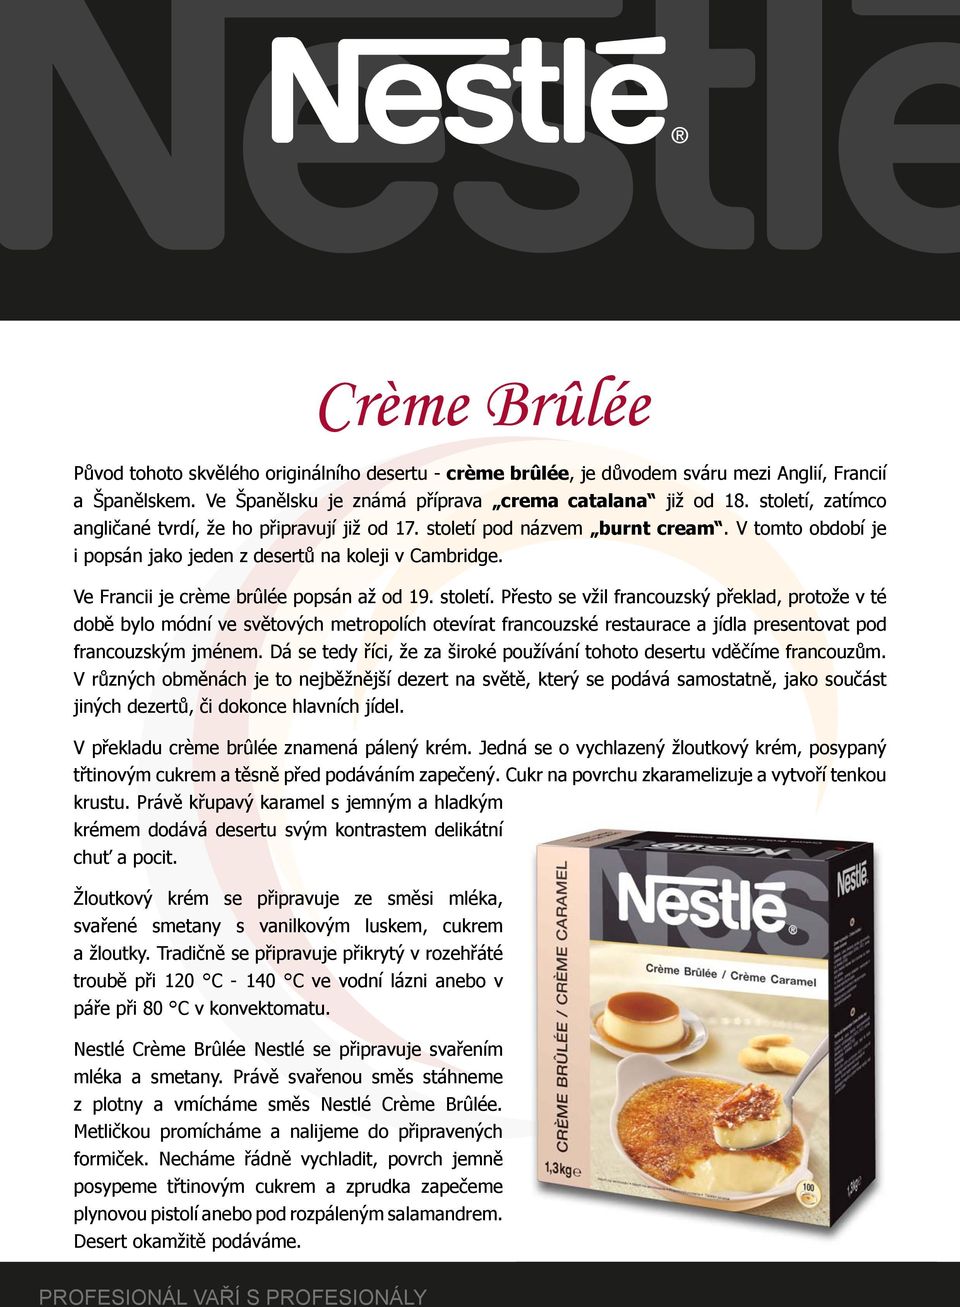 Ve Francii je crème brûlée popsán až od 19. století.